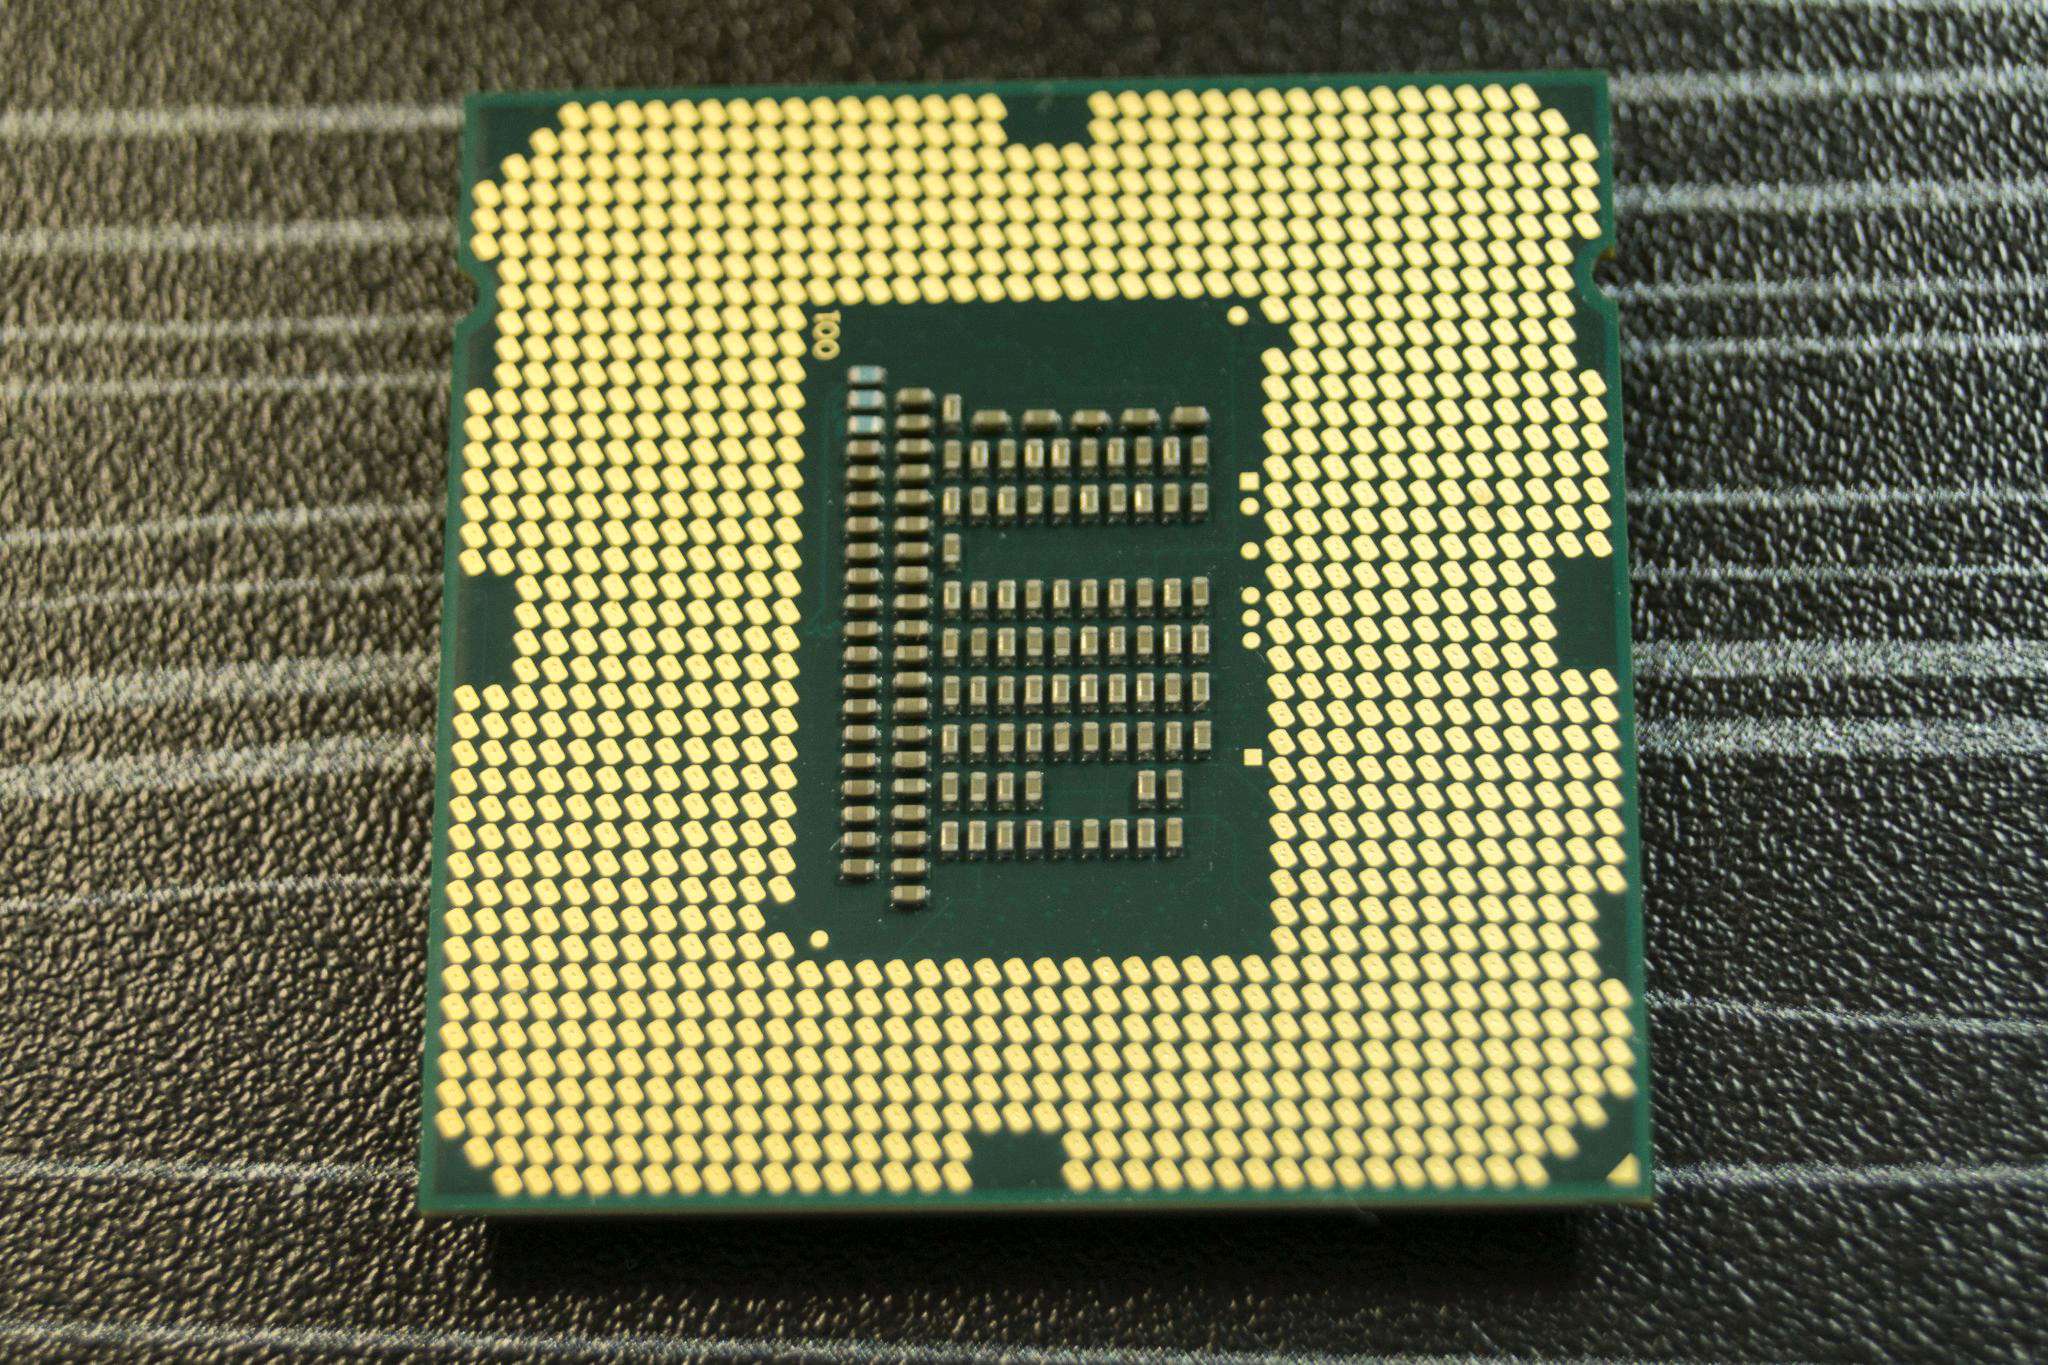 1155 процессоры для игр. Lga1155 Core i3. Core i3 3220 сокет. Сокет LGA 1155 (Socket h2). Intel Core i3-3220 CPU 3.30GHZ.